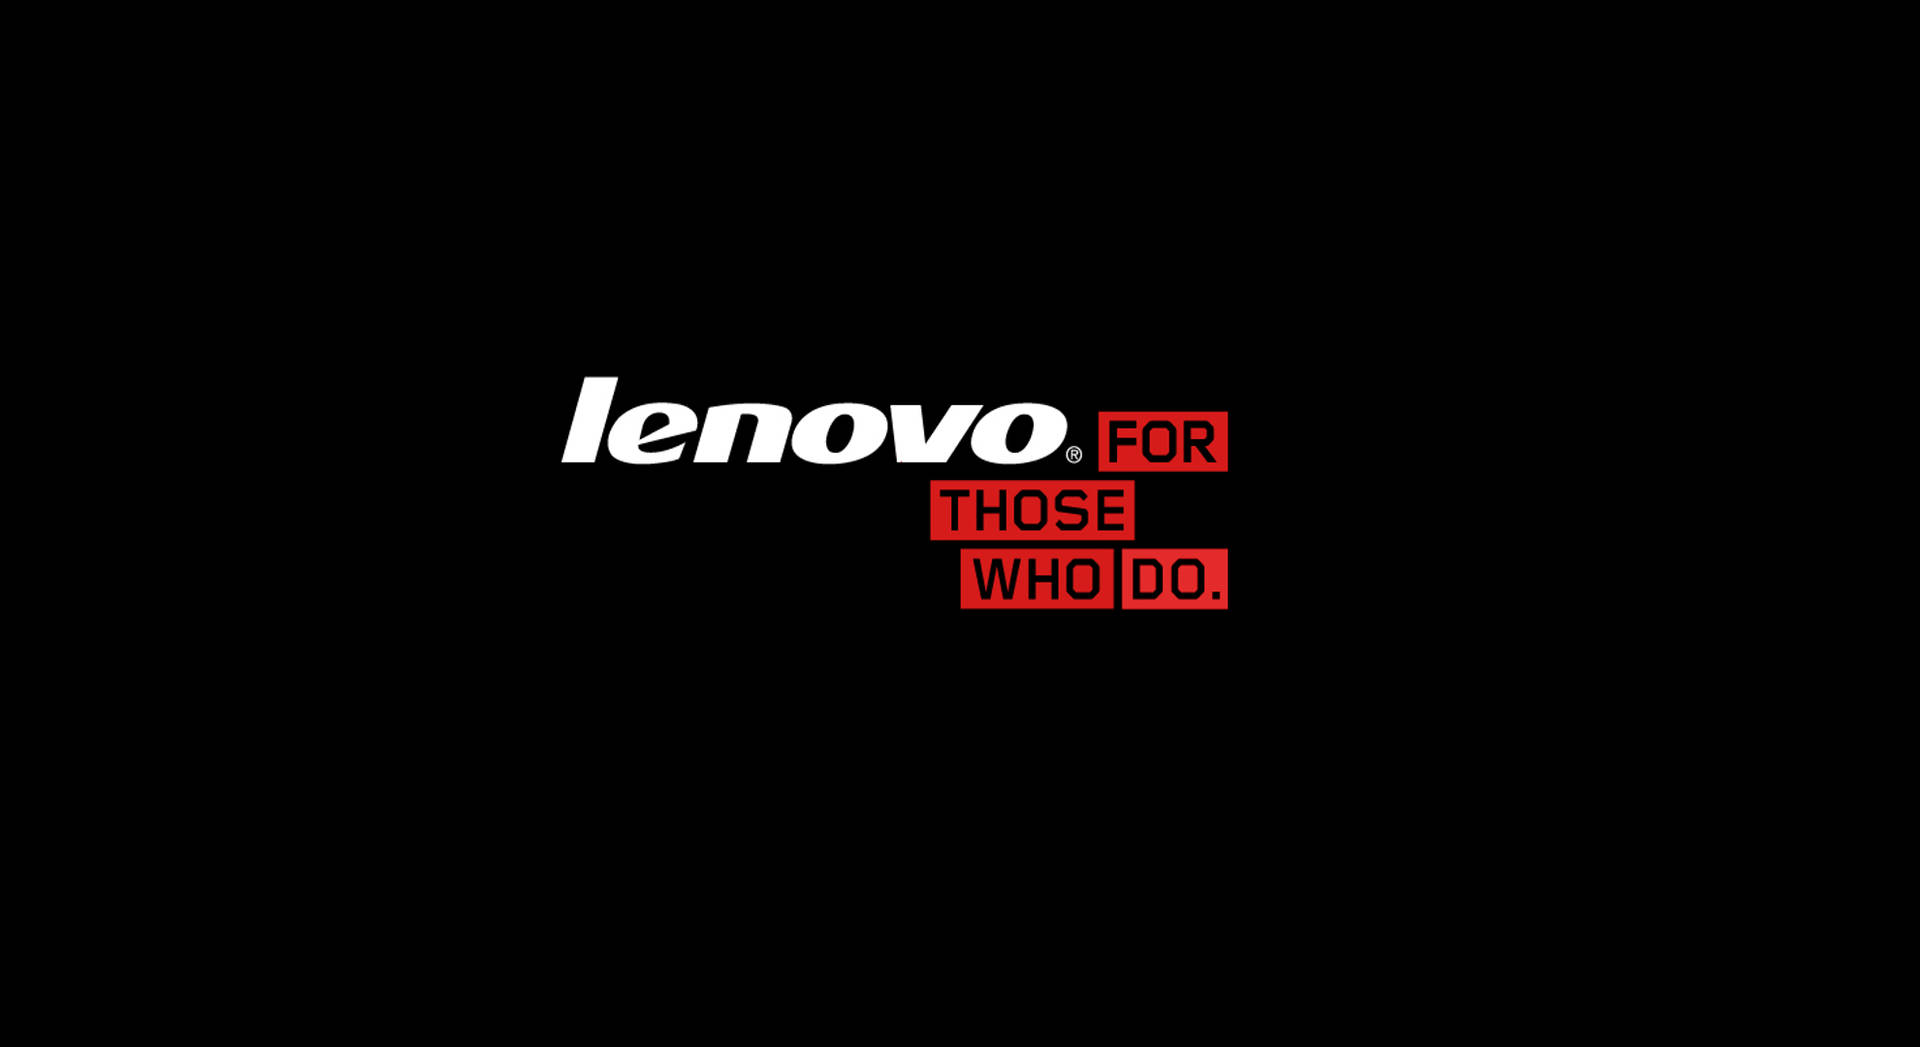 Pretopara Aqueles Que Usam Lenovo Hd. Papel de Parede